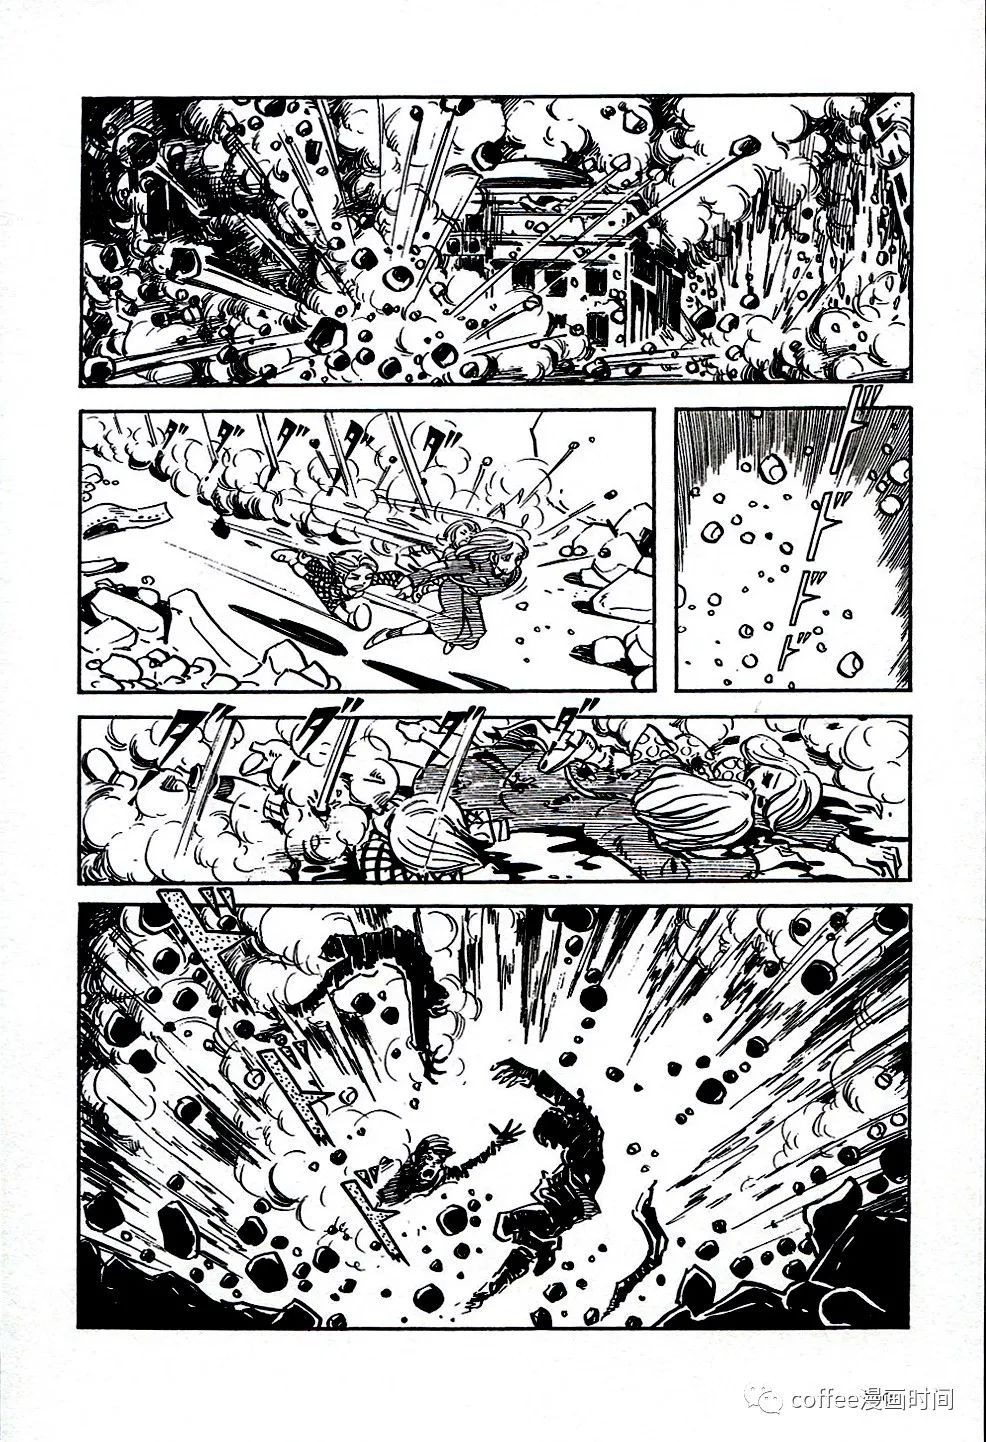 日本短篇漫畫傑作集 - 白土三平《戰爭》 - 7